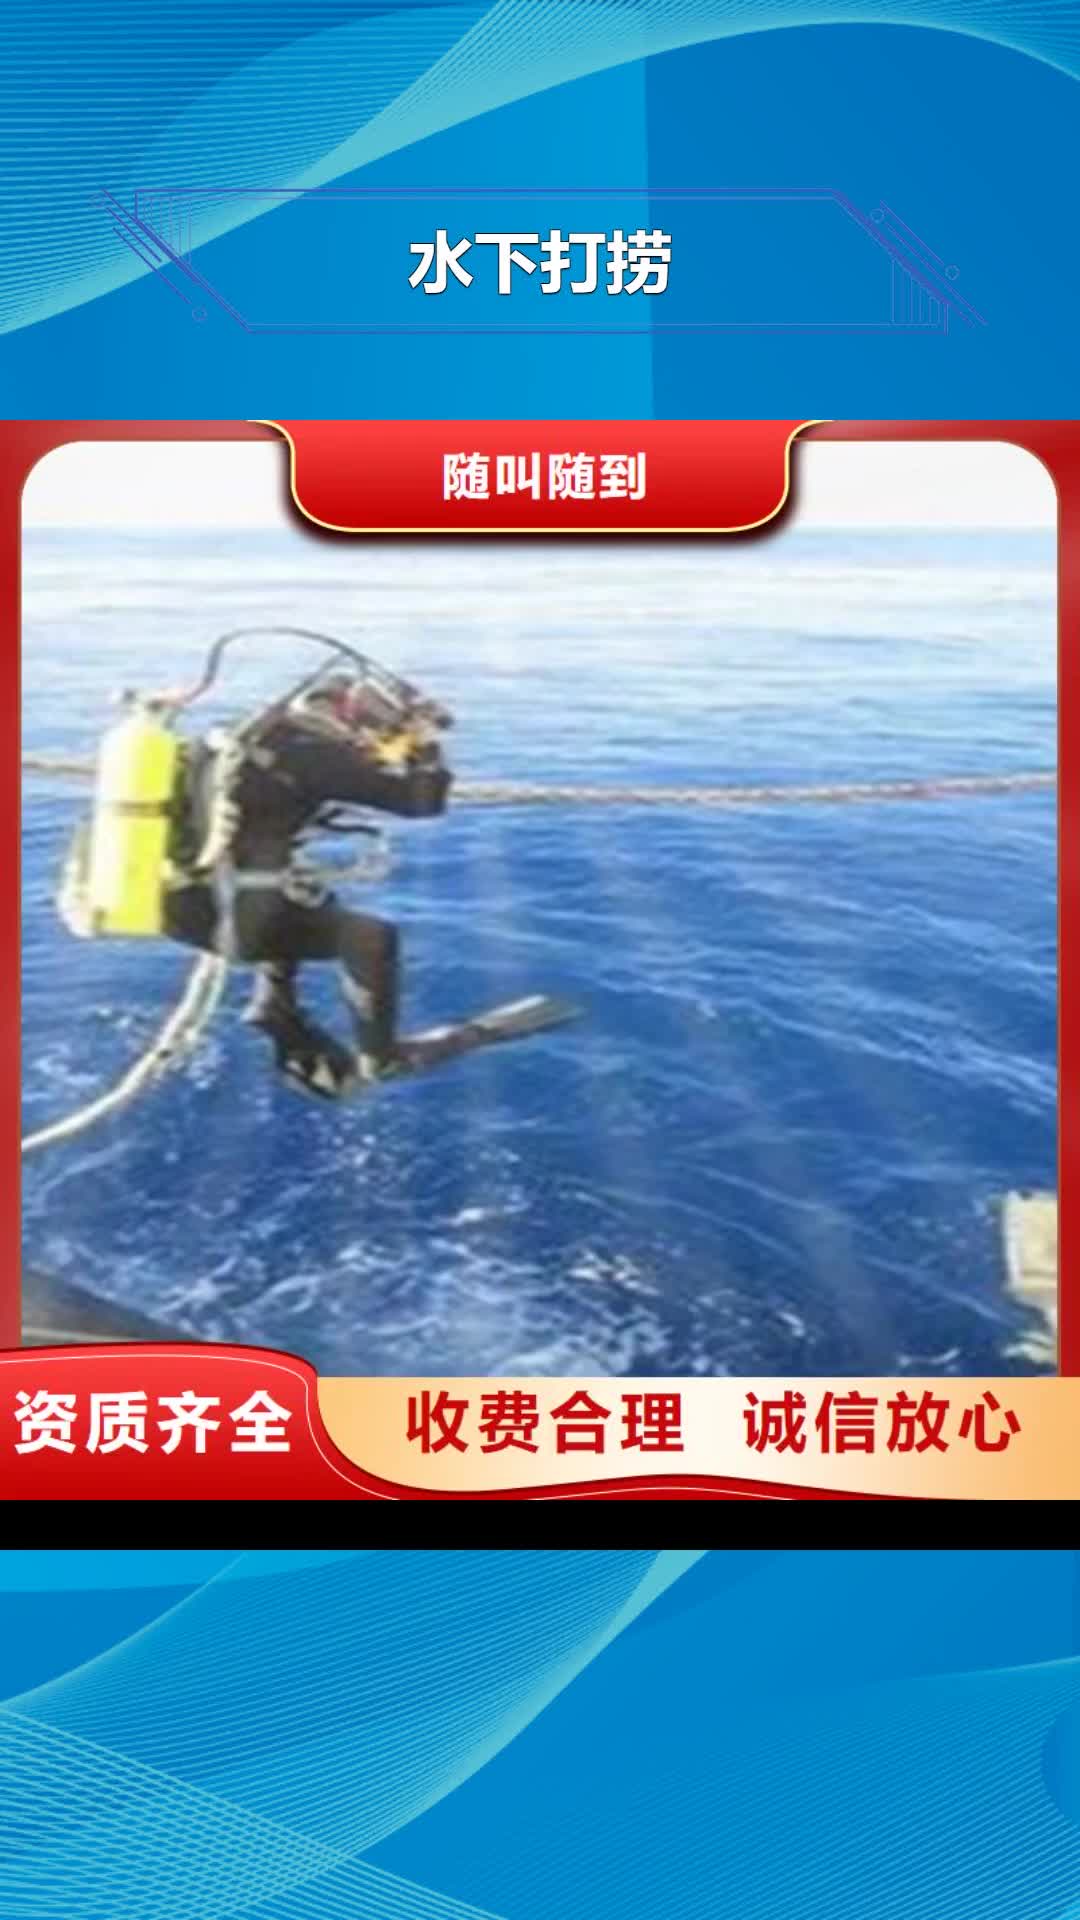 扬州【水下打捞】 潜水员工作技术好